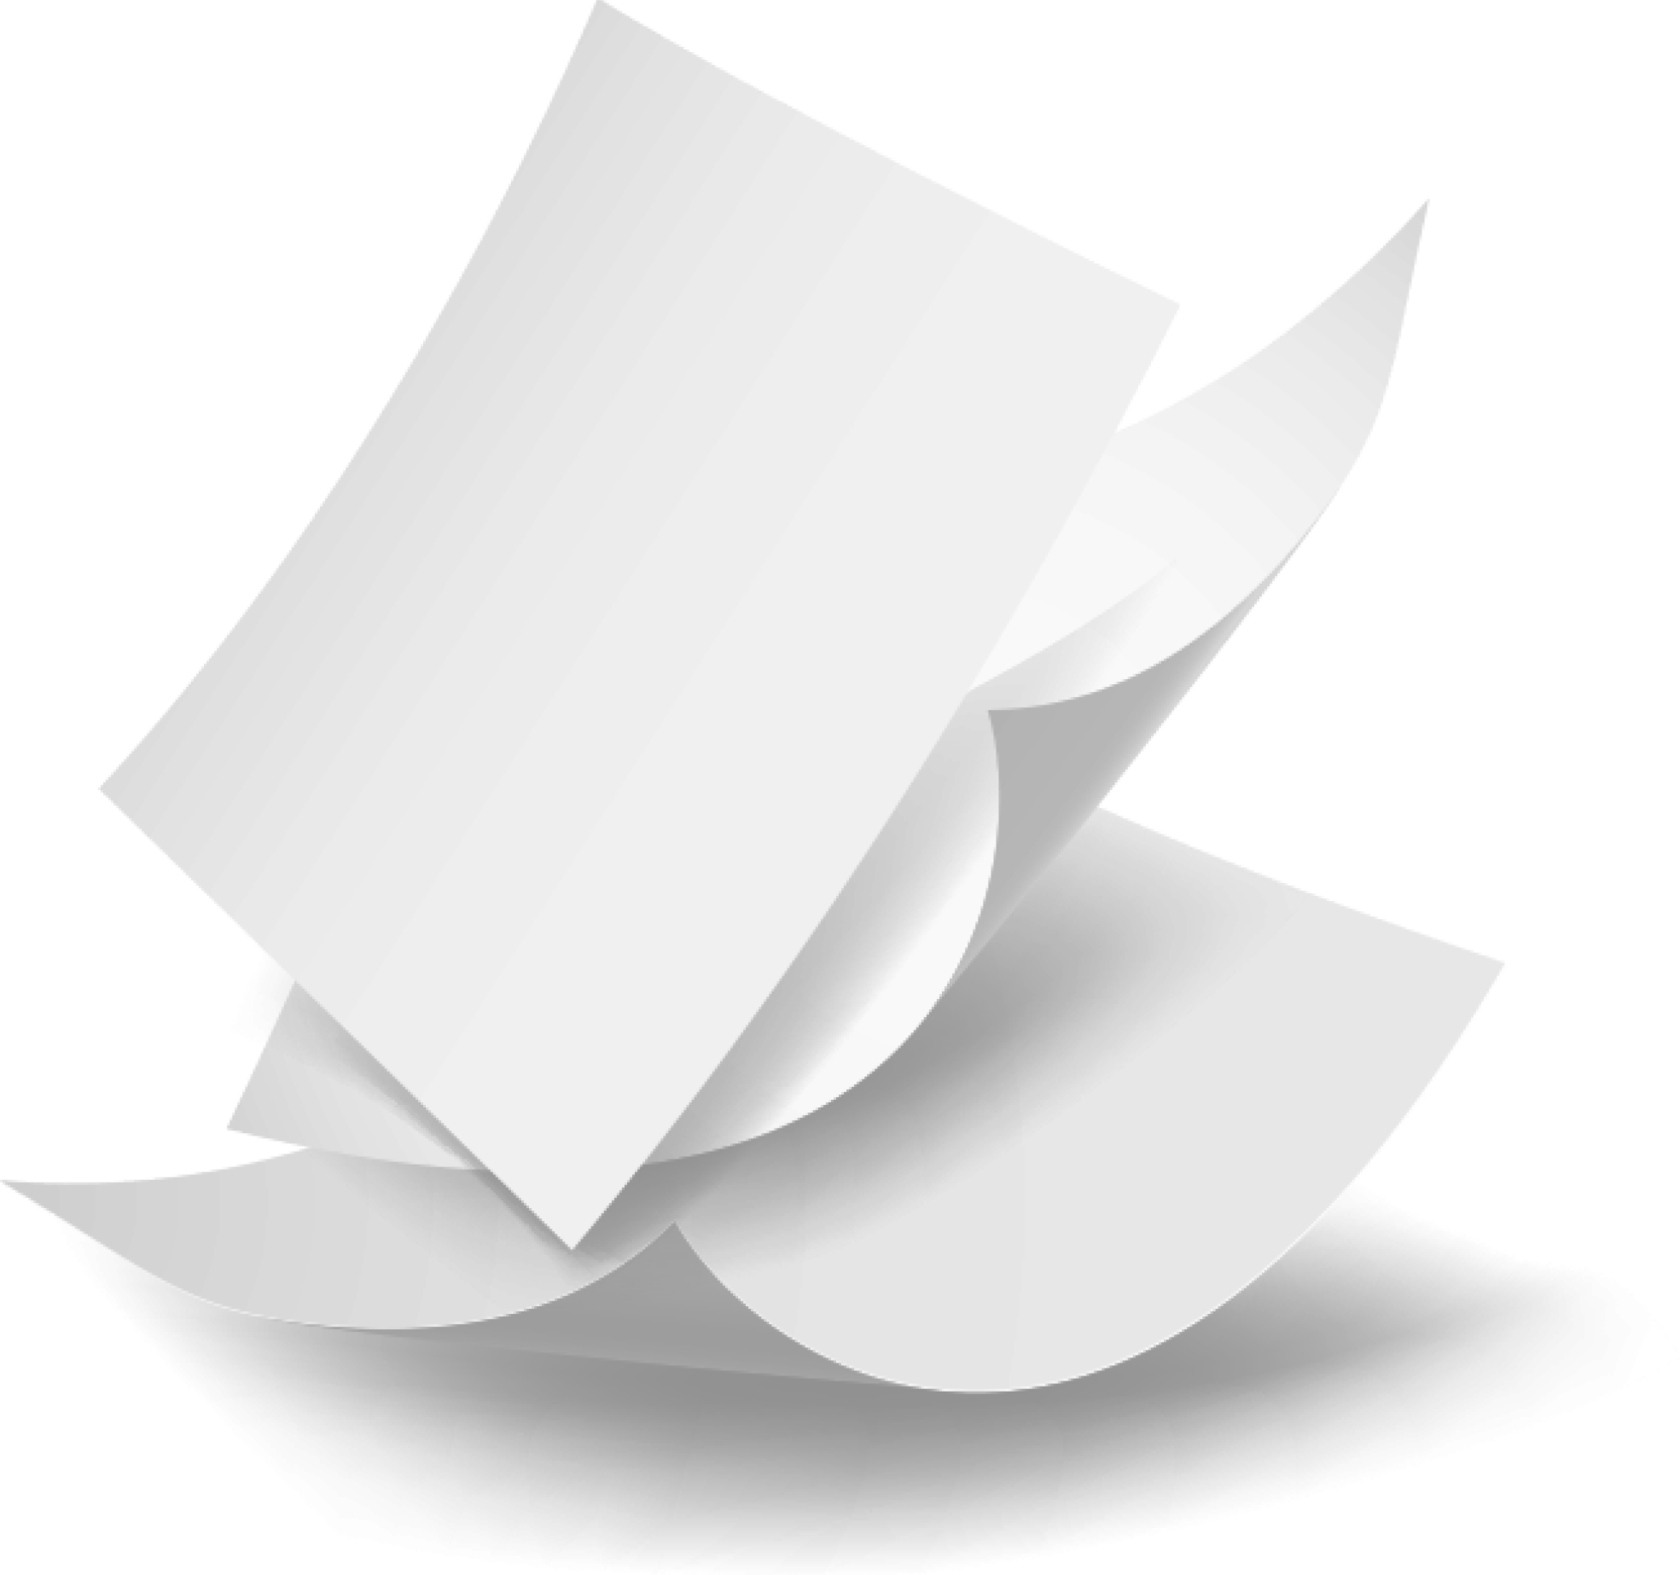 Ответы листы бумаги 2 по 5. Листок бумаги. Бумага без фона. Падающие листы бумаги. Изогнутая бумага.